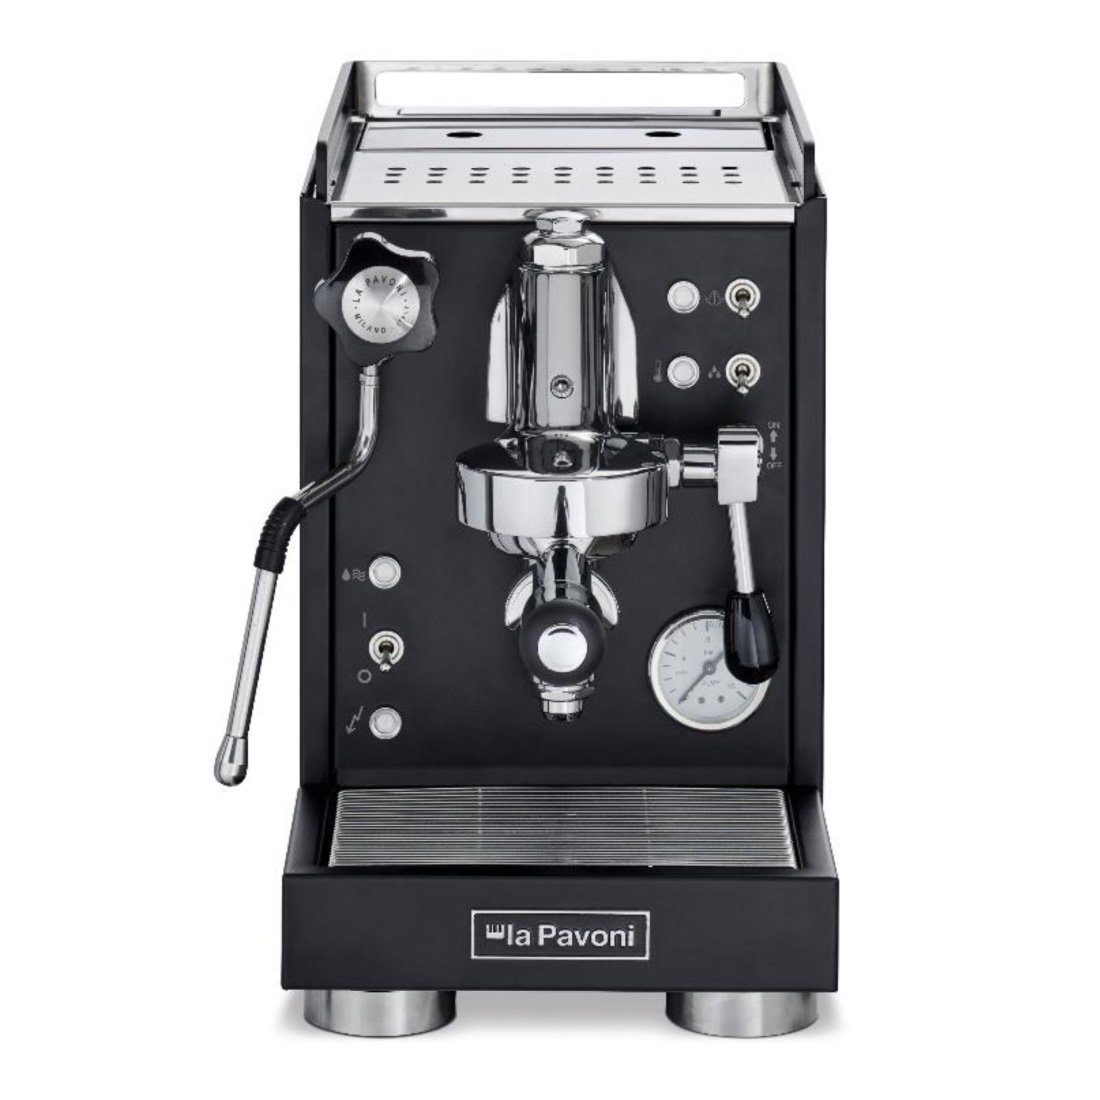 La Pavoni Siebträgermaschine La Pavoni New Mini Cellini Espressomaschine LPSMCB01EU, Kippschalter für Heißwasser- und Dampfentnahme, Pumpendruckmanometer